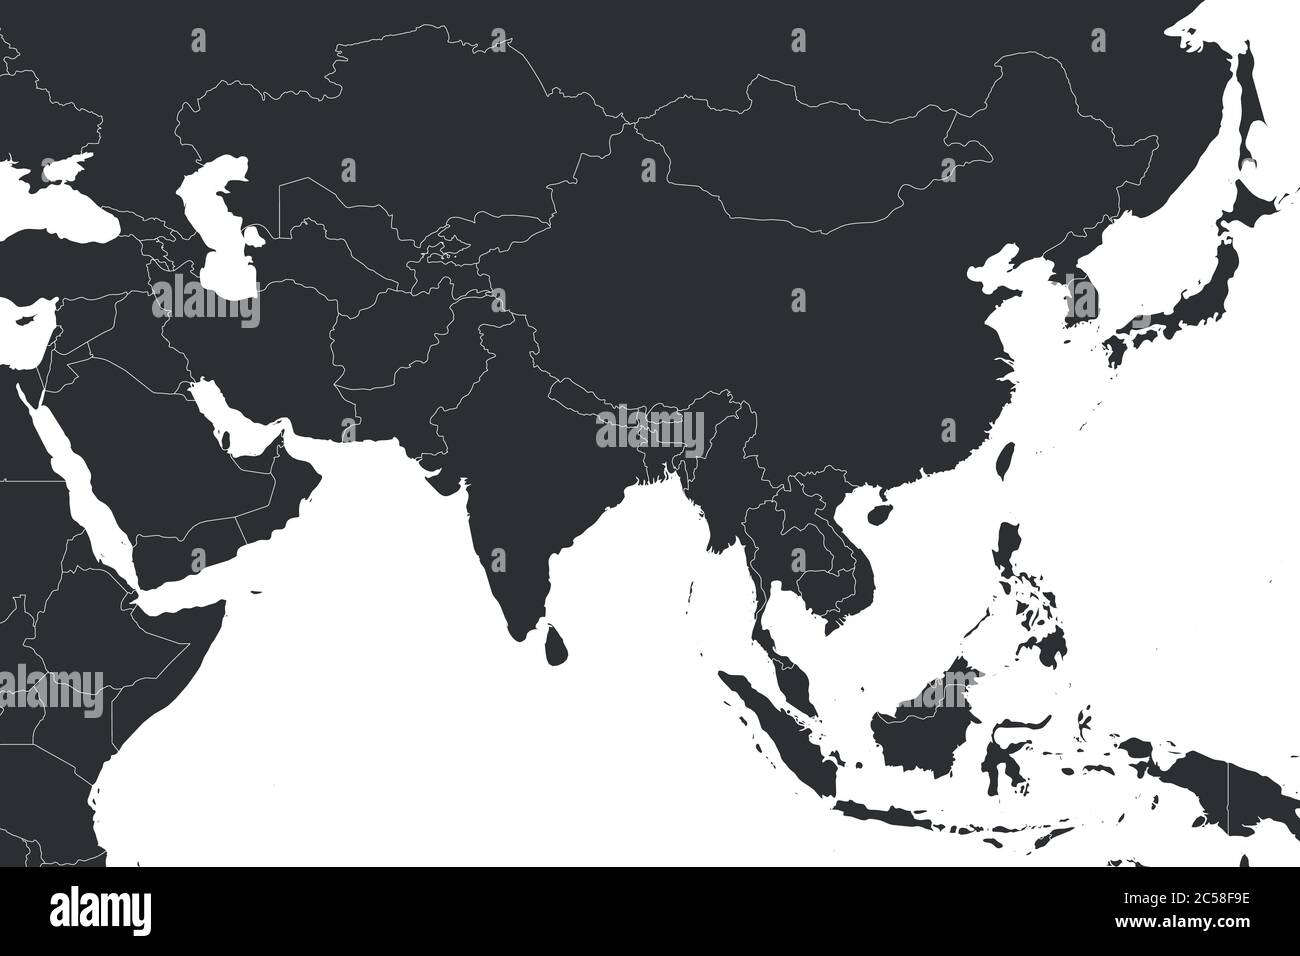 Mappa politica vuota dell'Asia occidentale, meridionale e orientale in grigio. Semplice illustrazione vettoriale piatta. Illustrazione Vettoriale